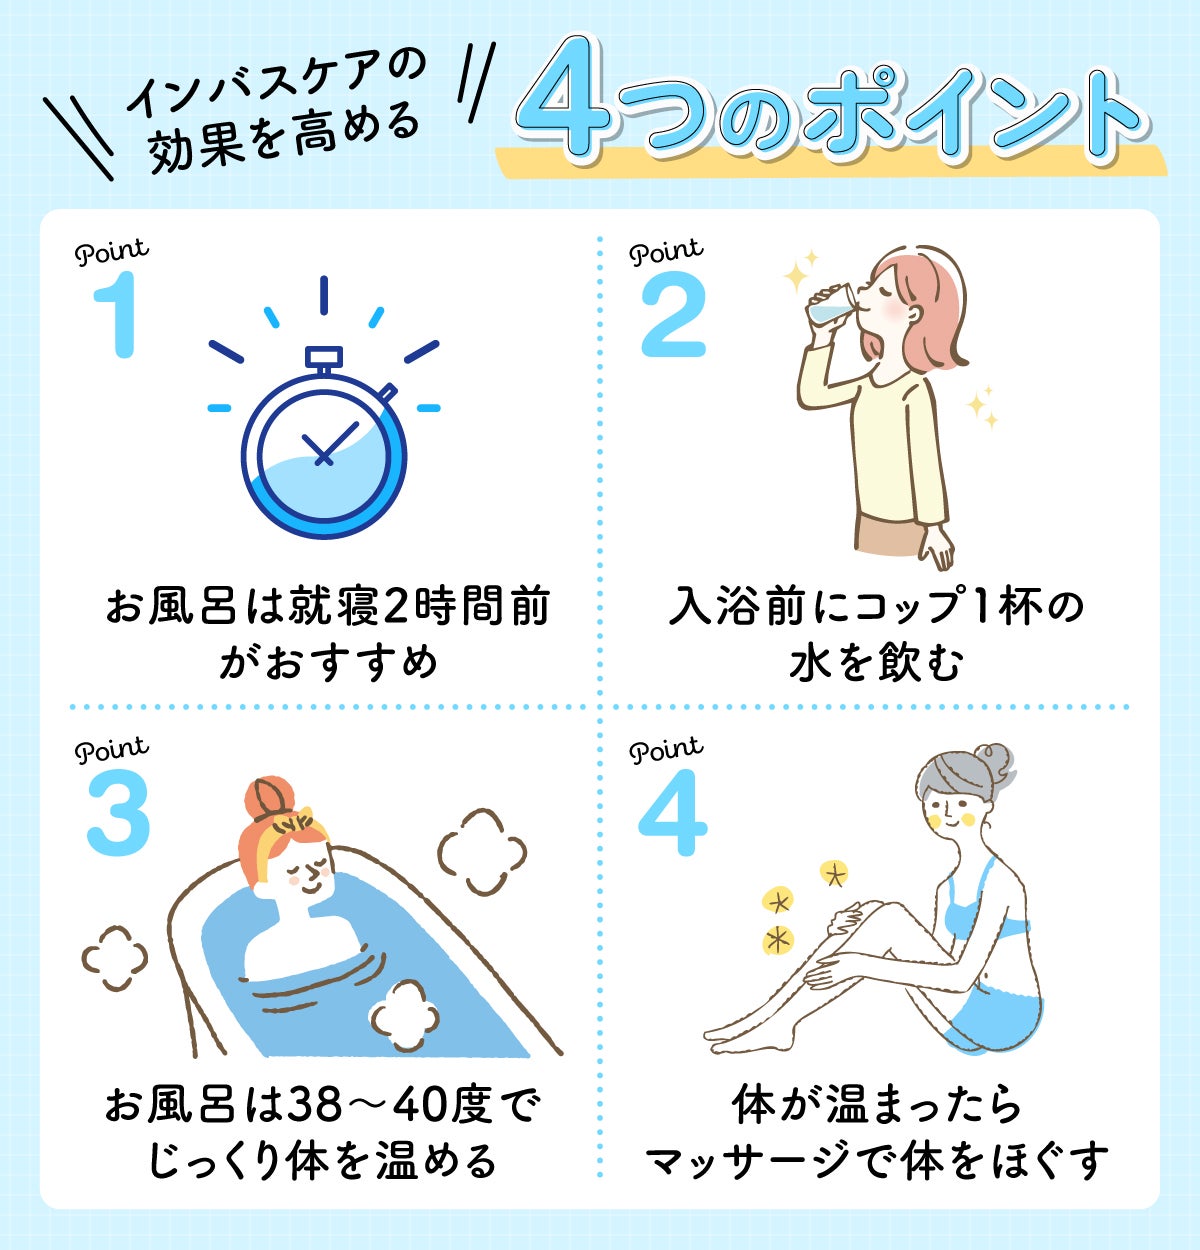 インバスケアの効果を高める4つのポイント。POINT1は、お風呂は就寝2時間前にすませること。 POINT2は、入浴前にコップ1杯の水を飲むこと。POINT3は、お風呂は38～40度でじっくり体を温めること。POINT4は、体が温まったらマッサージで体をほぐすこと。 お風呂から出たらすぐに保湿しよう！